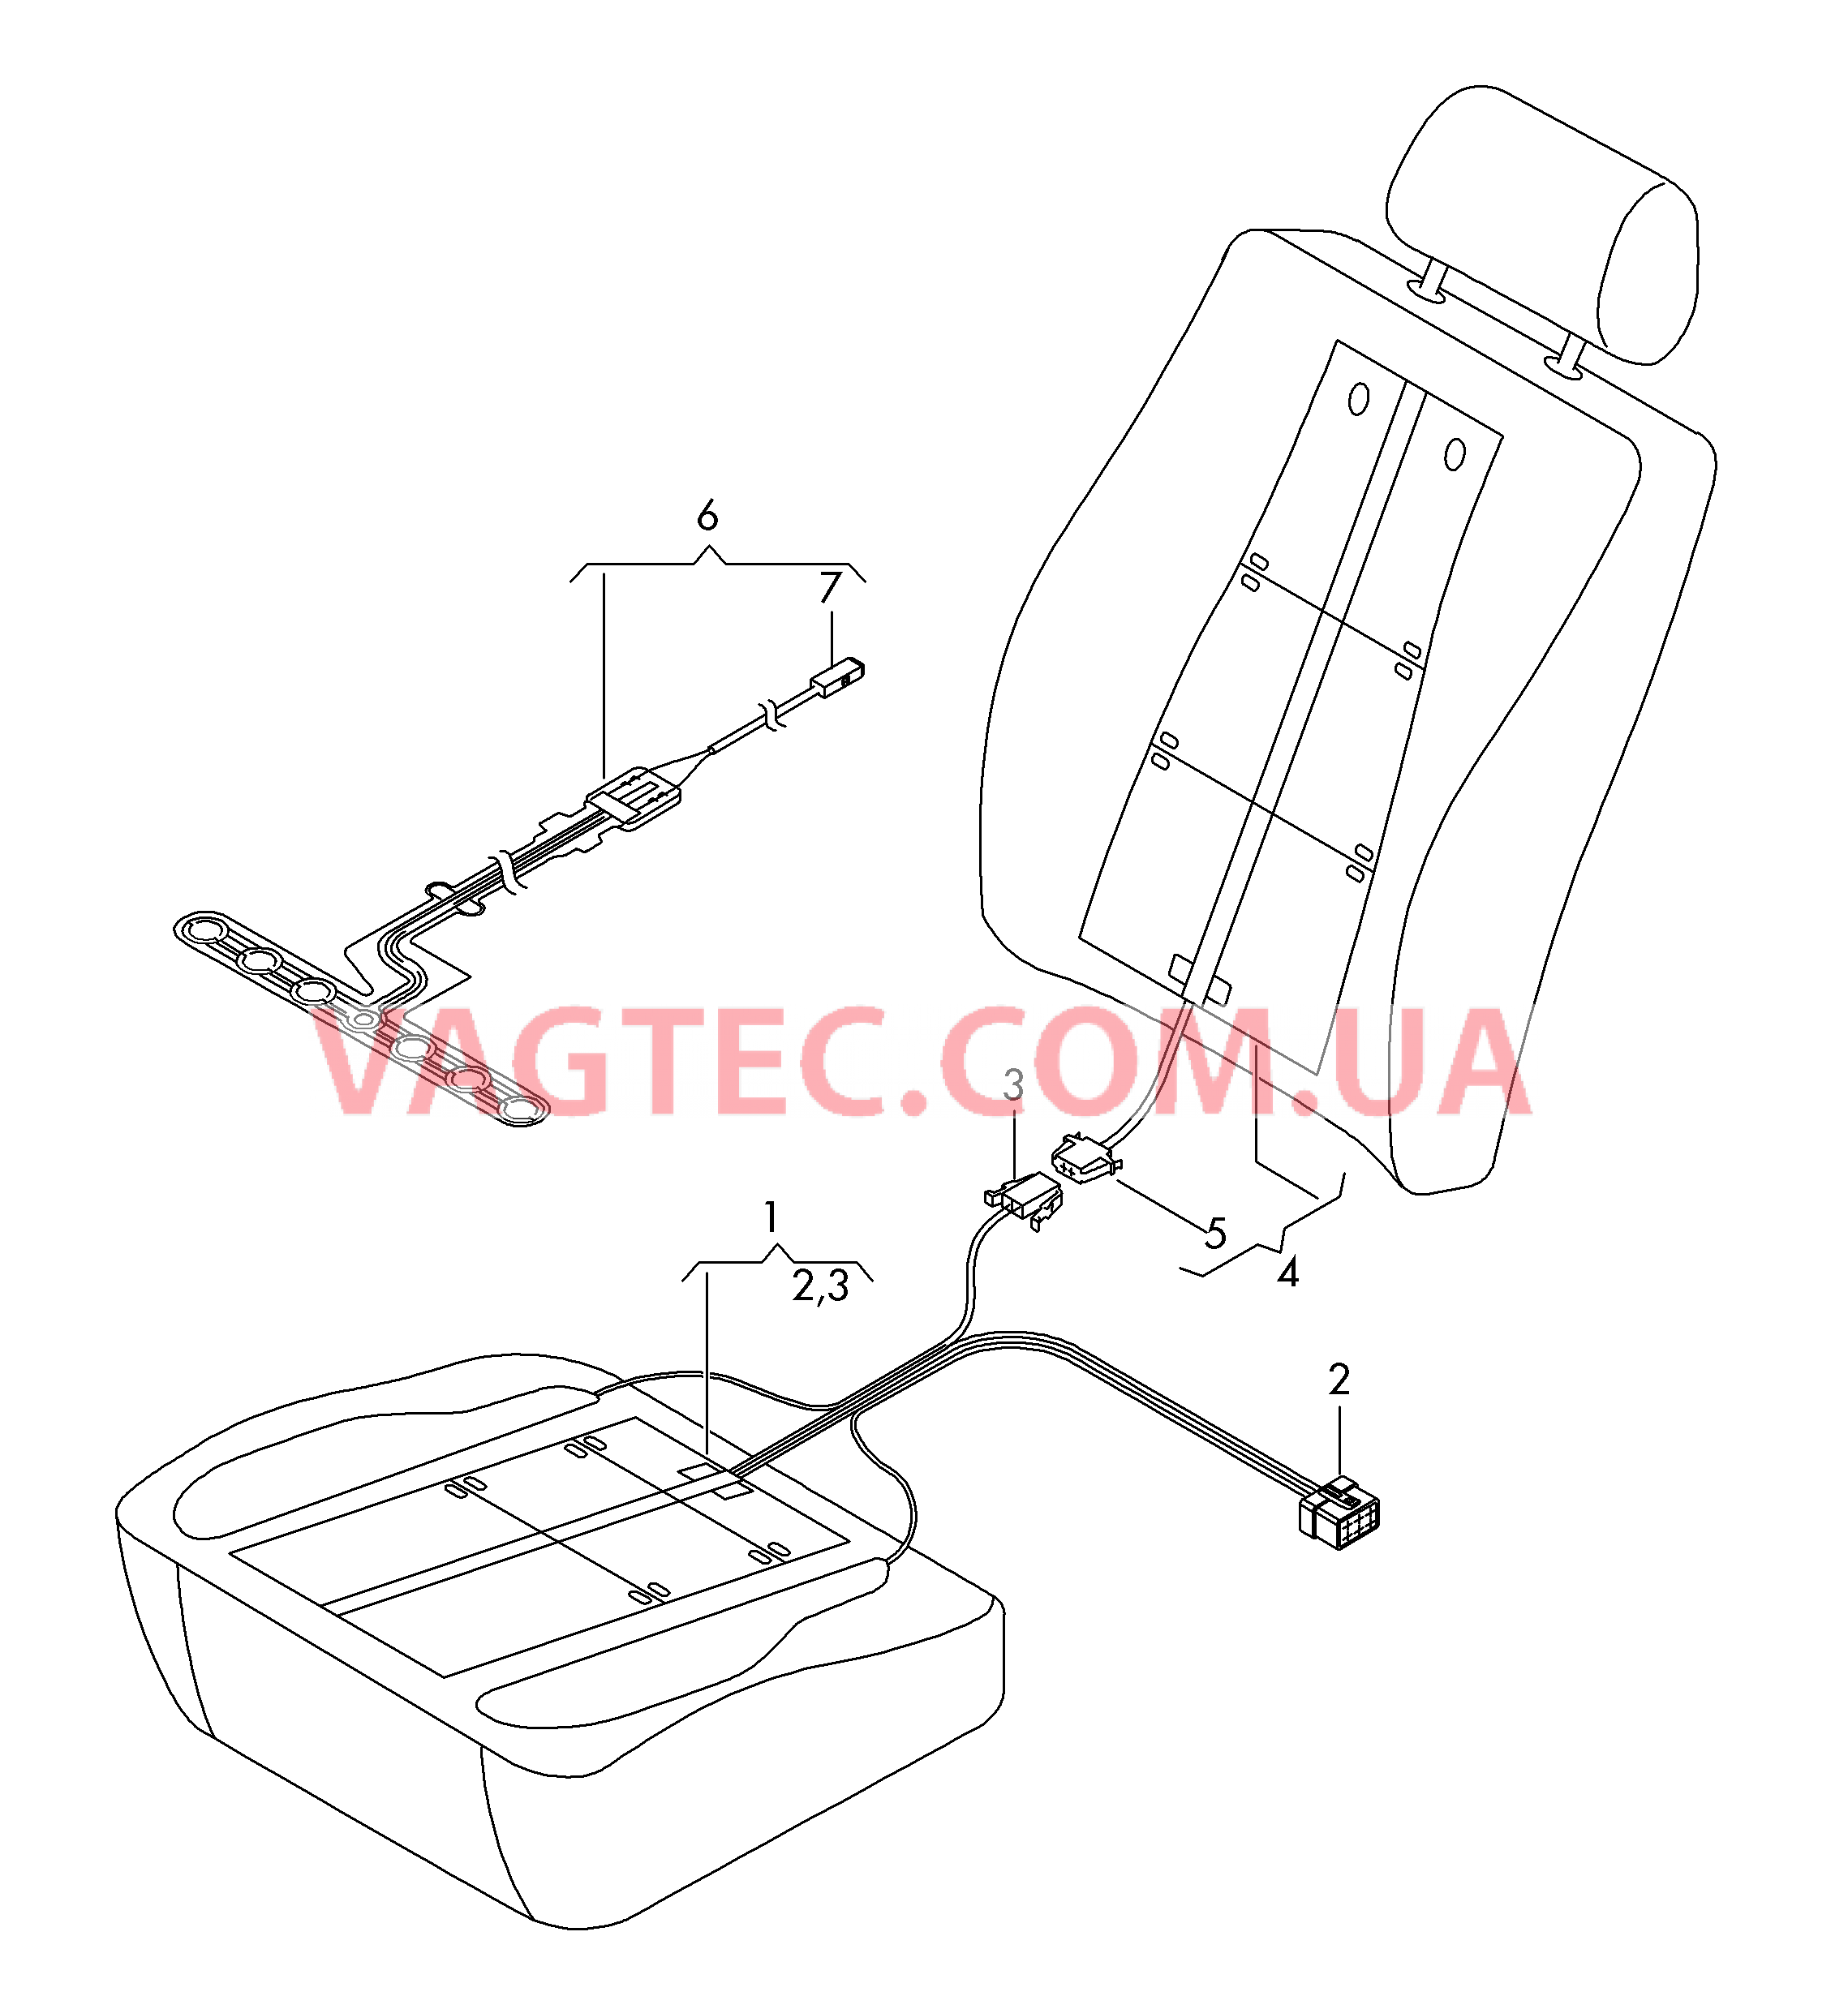 Нагревательный элемент спинки и подушки сиденья  Вставка распознавания занятости сиденья  для AUDI A3 2014